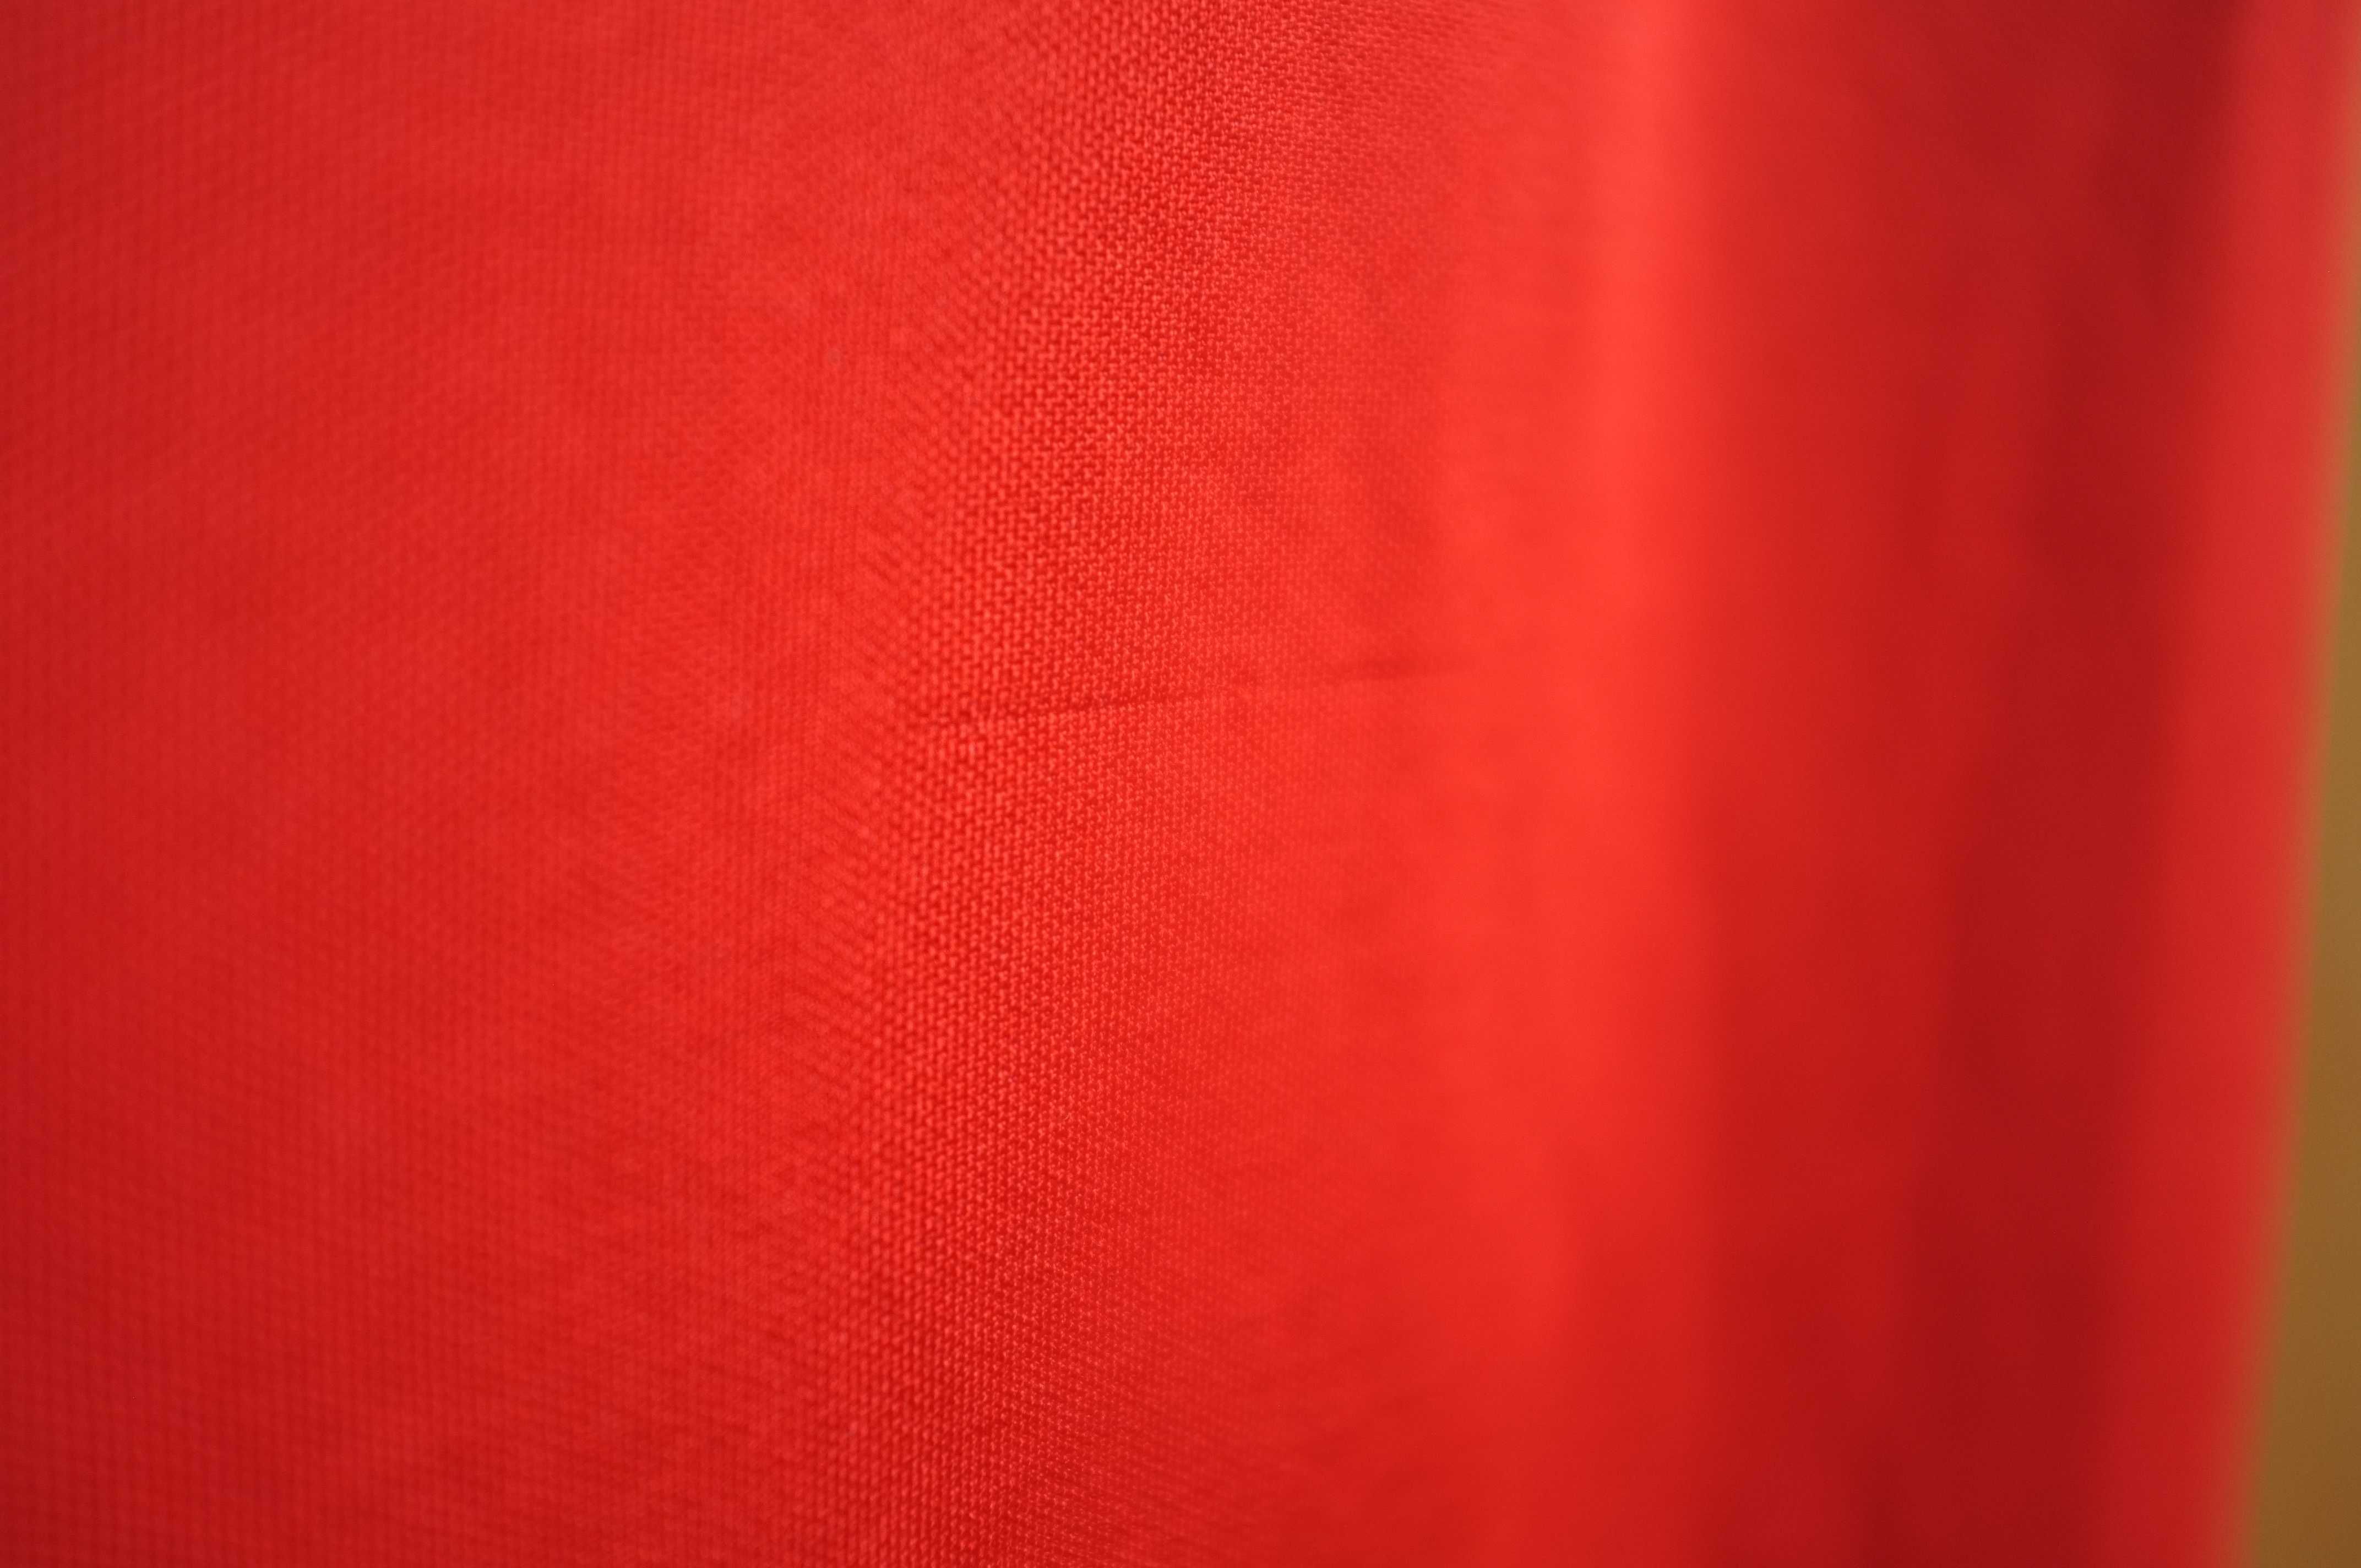 czerwona suknia vintage 70s zabytkowa dekolt na plecach hippisowska